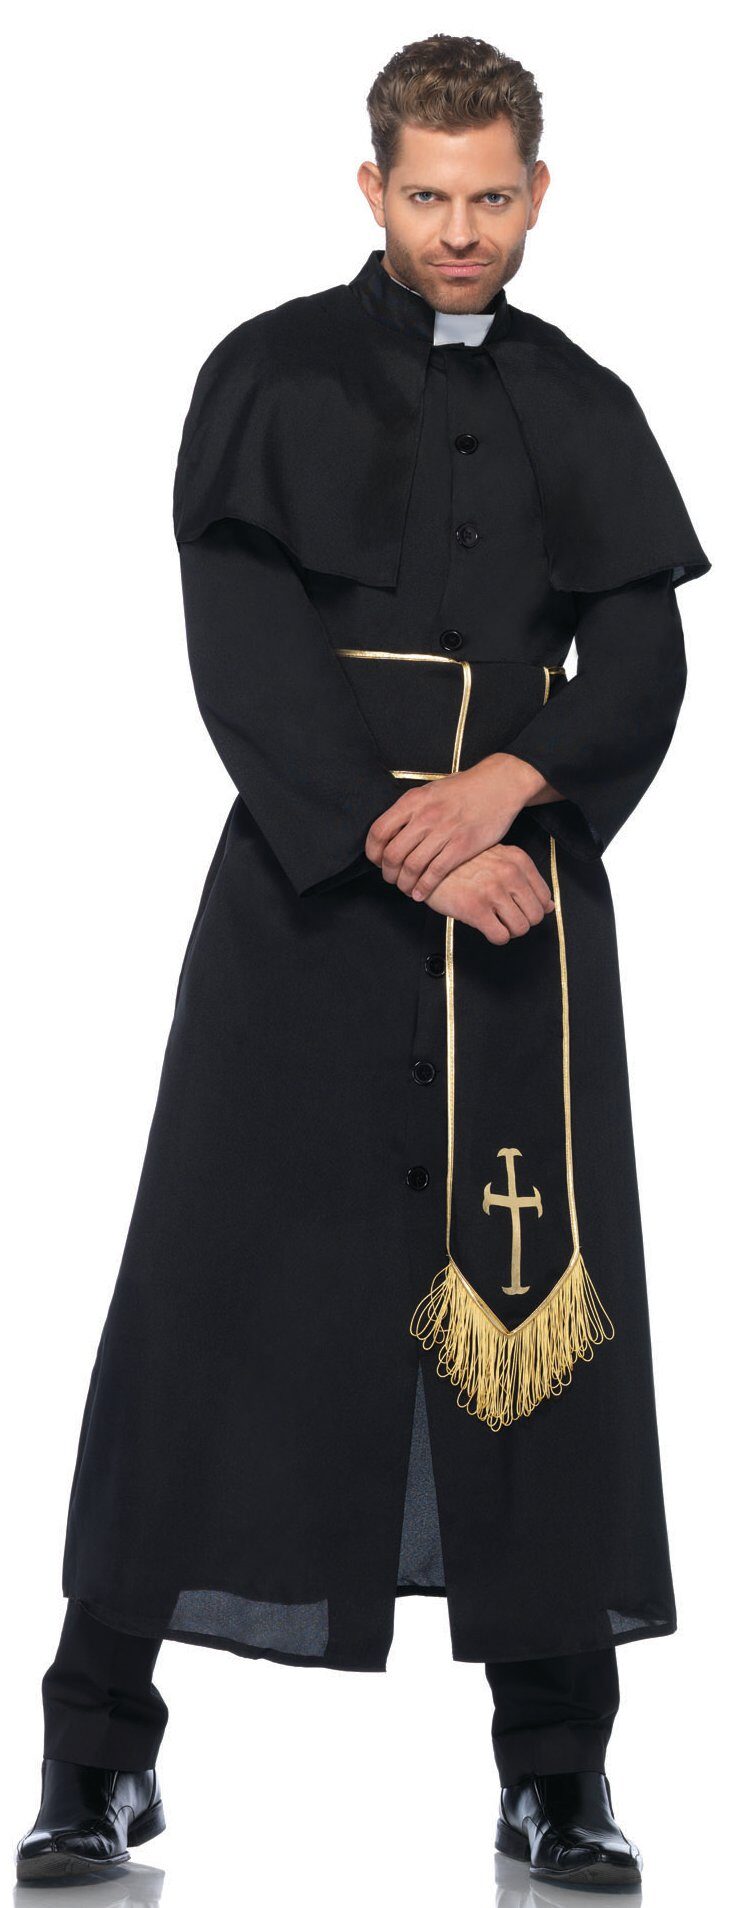 Одежда католического священника